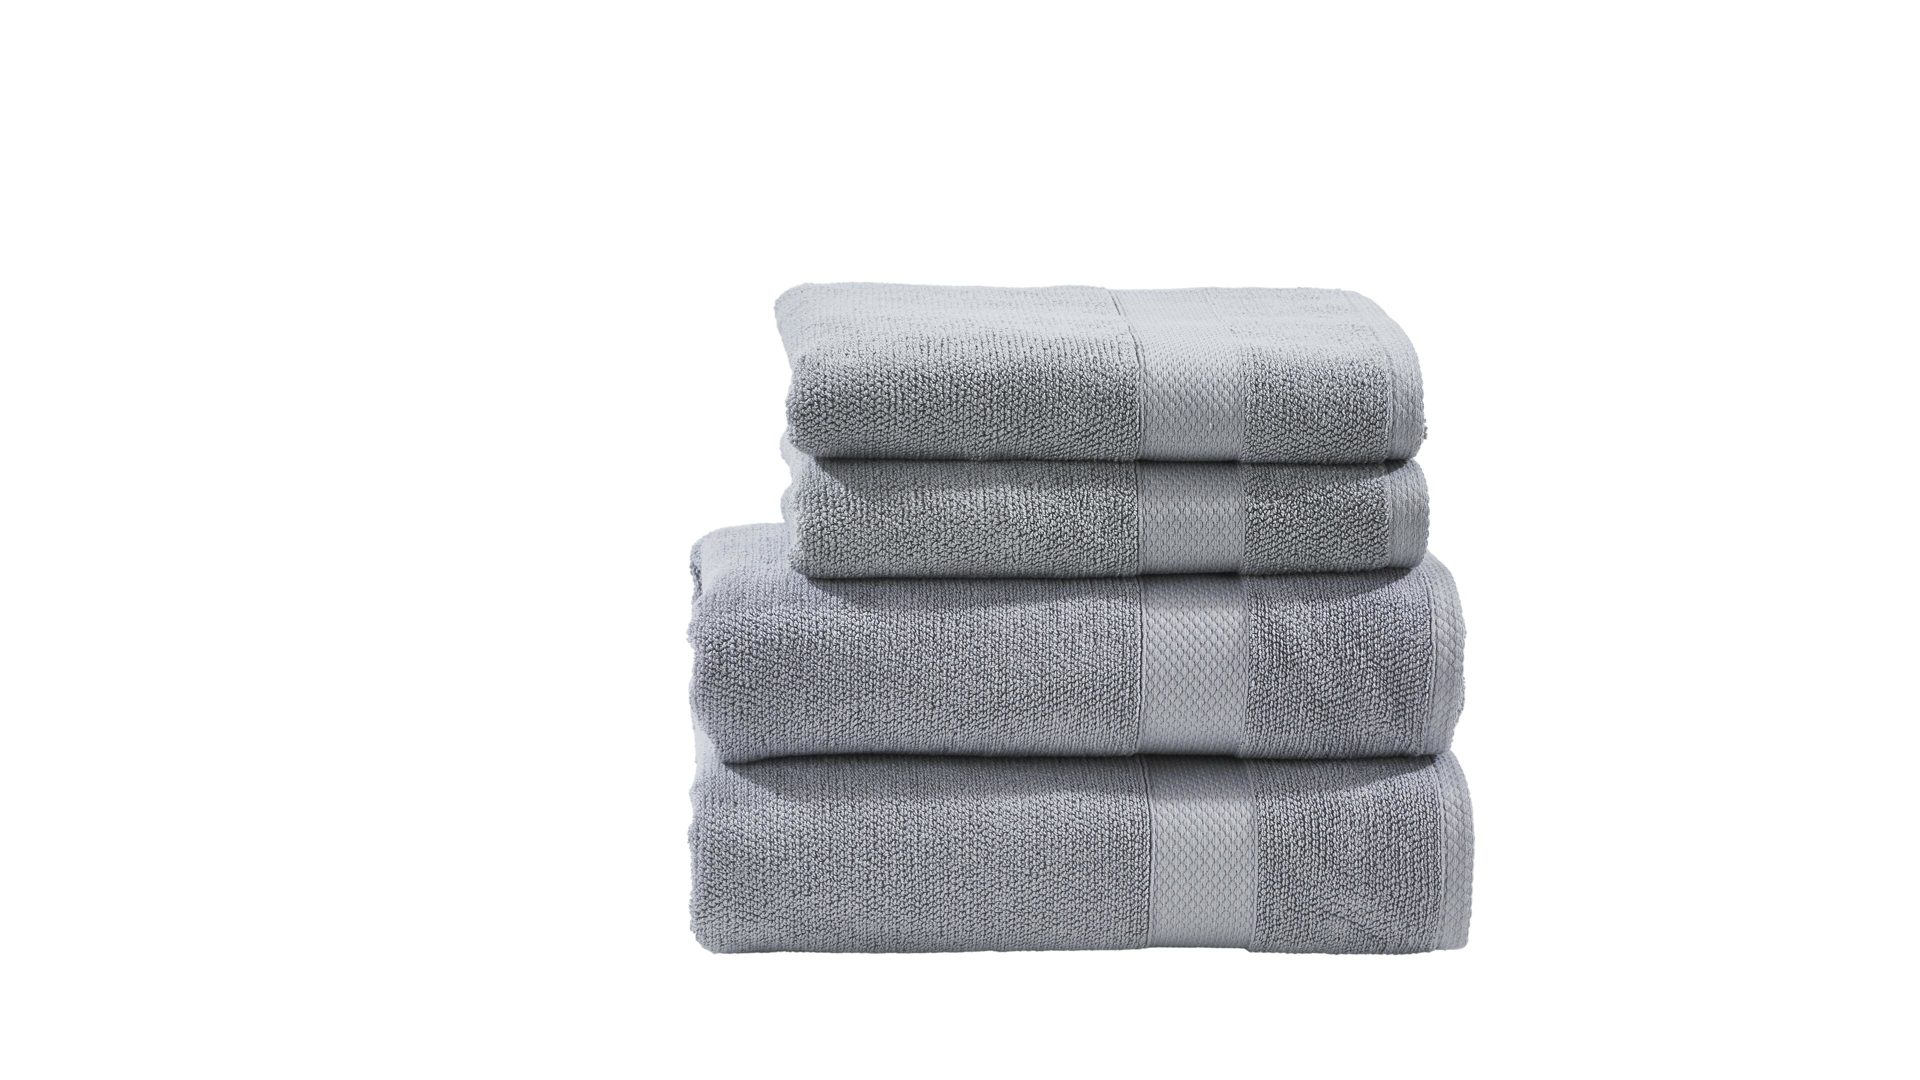 Handtuch-Set Done.® aus Stoff in Hellgrau done.® Handtuch-Set Deluxe silberfarbene Baumwolle – vierteilig